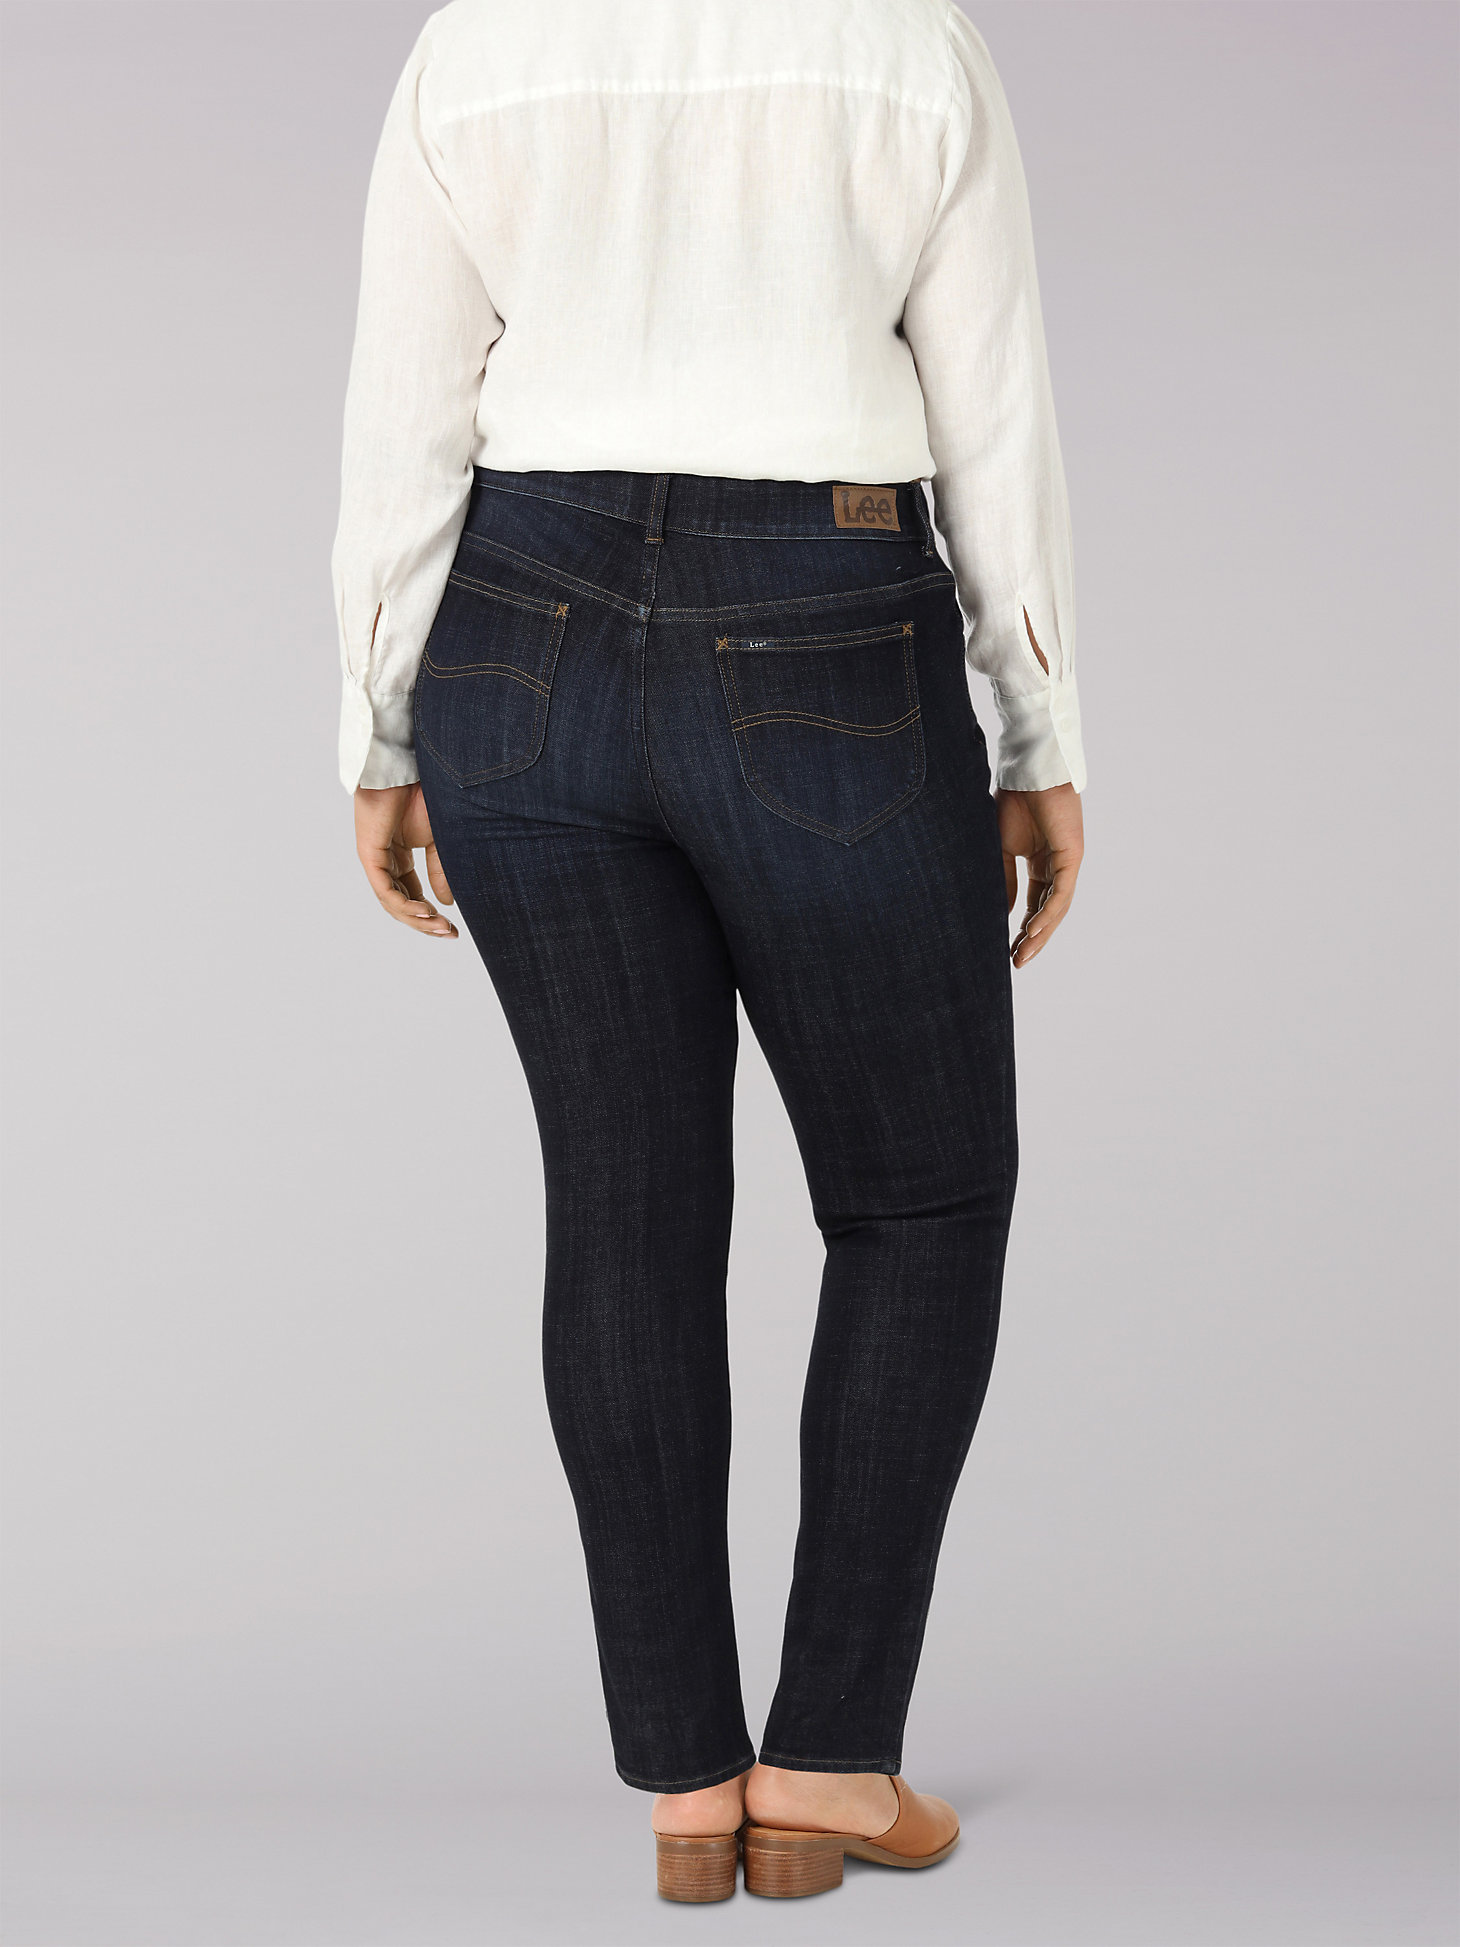 Women's Legendary Slim Fit Skinny Jean (Plus) in Blackout alternative view 1